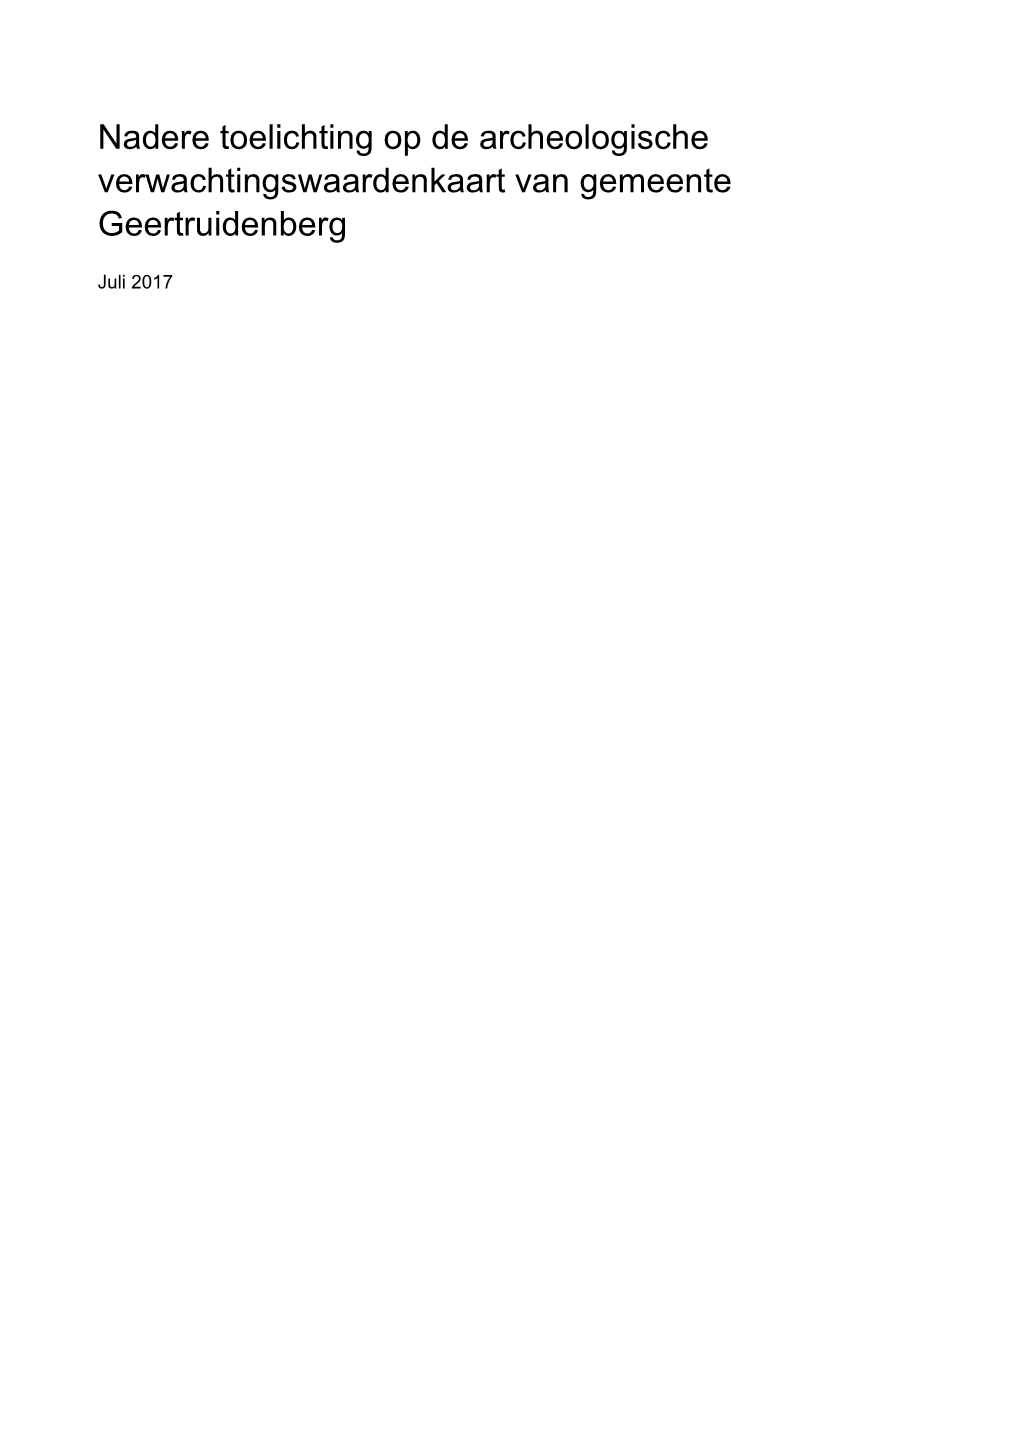 Nadere Toelichting Op De Archeologische Verwachtingswaardenkaart Van Gemeente Geertruidenberg